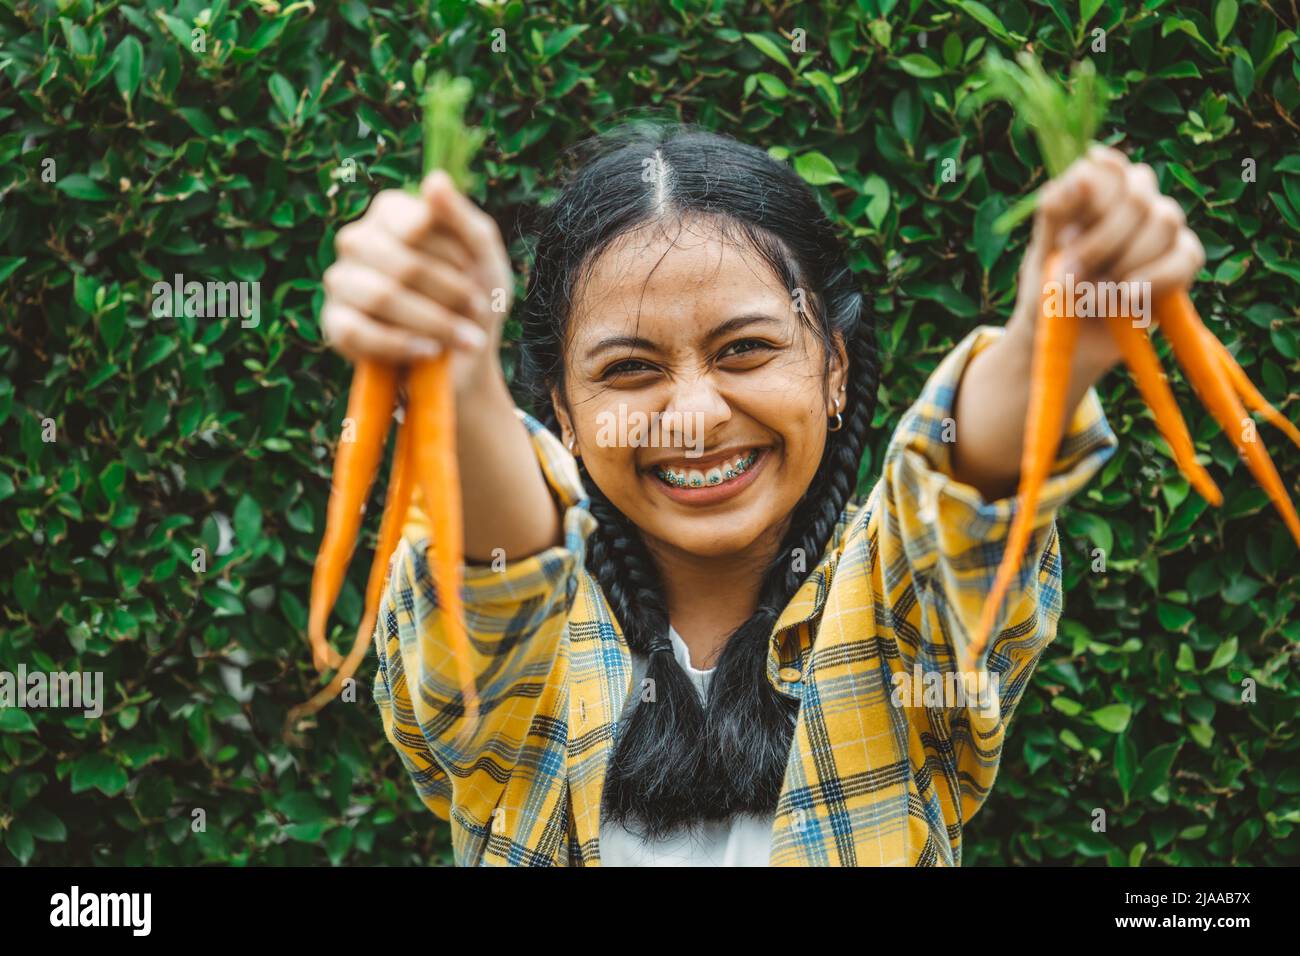 comer verduras veganas para un concepto saludable bueno para la vida. joven adolescente mano sosteniendo zanahoria bebé sonrisa feliz. Foto de stock